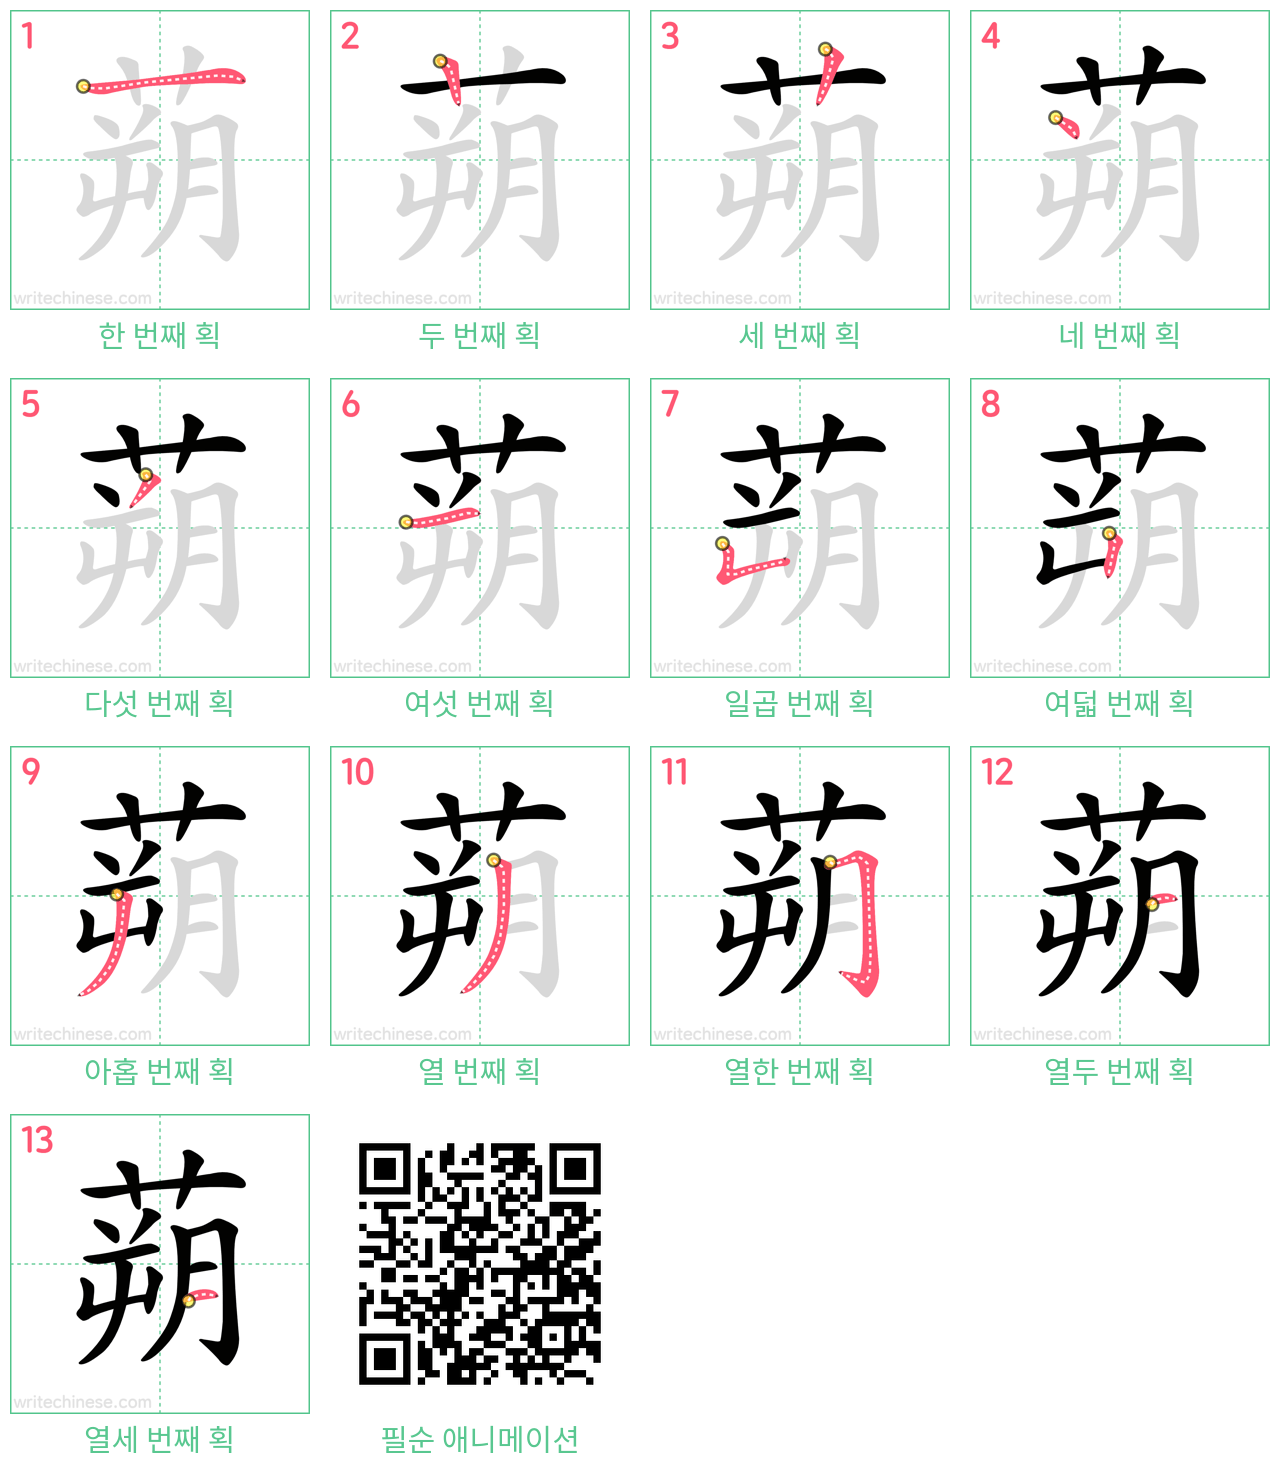 蒴 step-by-step stroke order diagrams